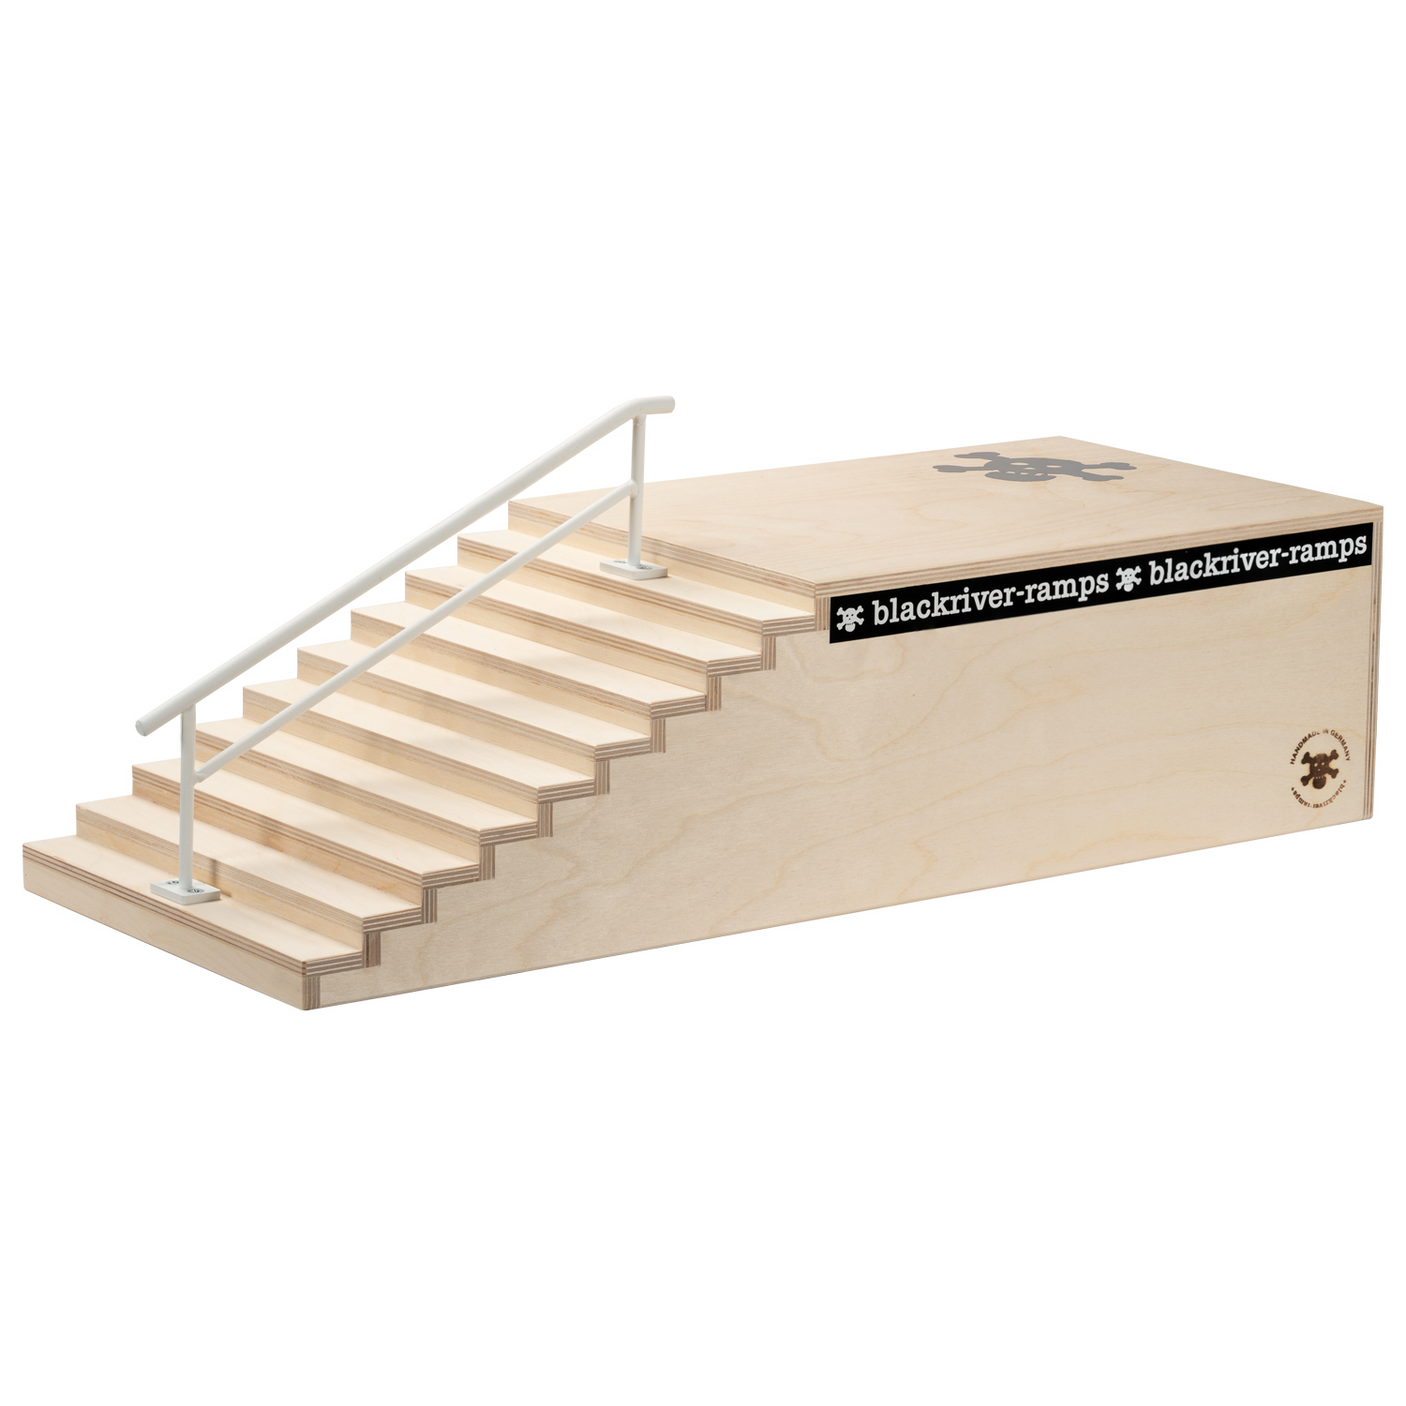 Blackriver Fingerboard Ramps - 10 Stair